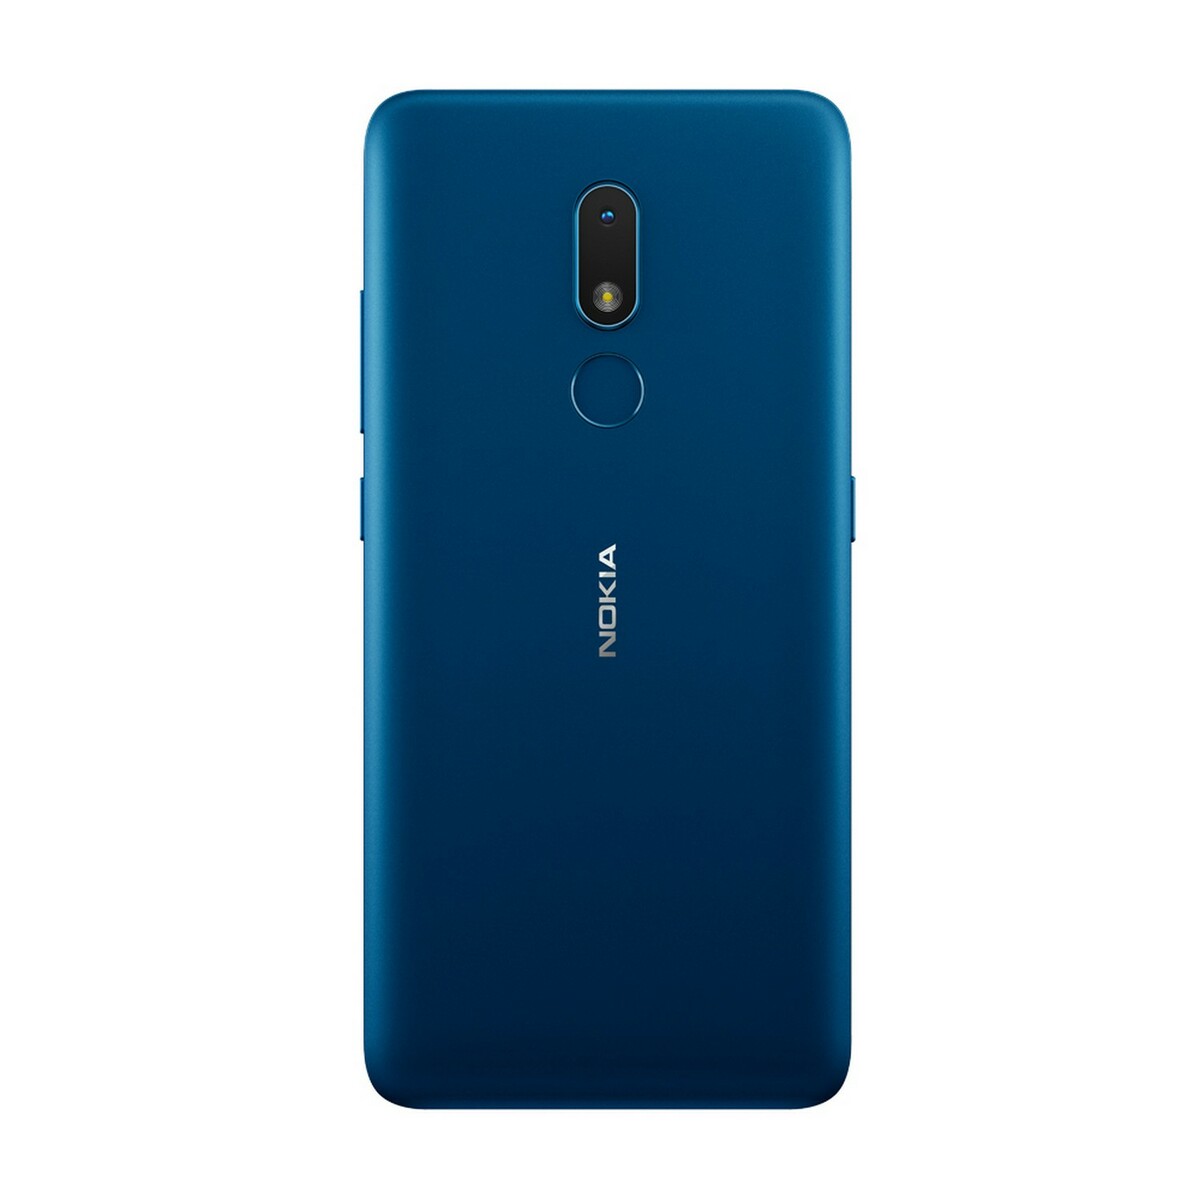 Nokia C3 DS 2GB/16GB Nordic blue